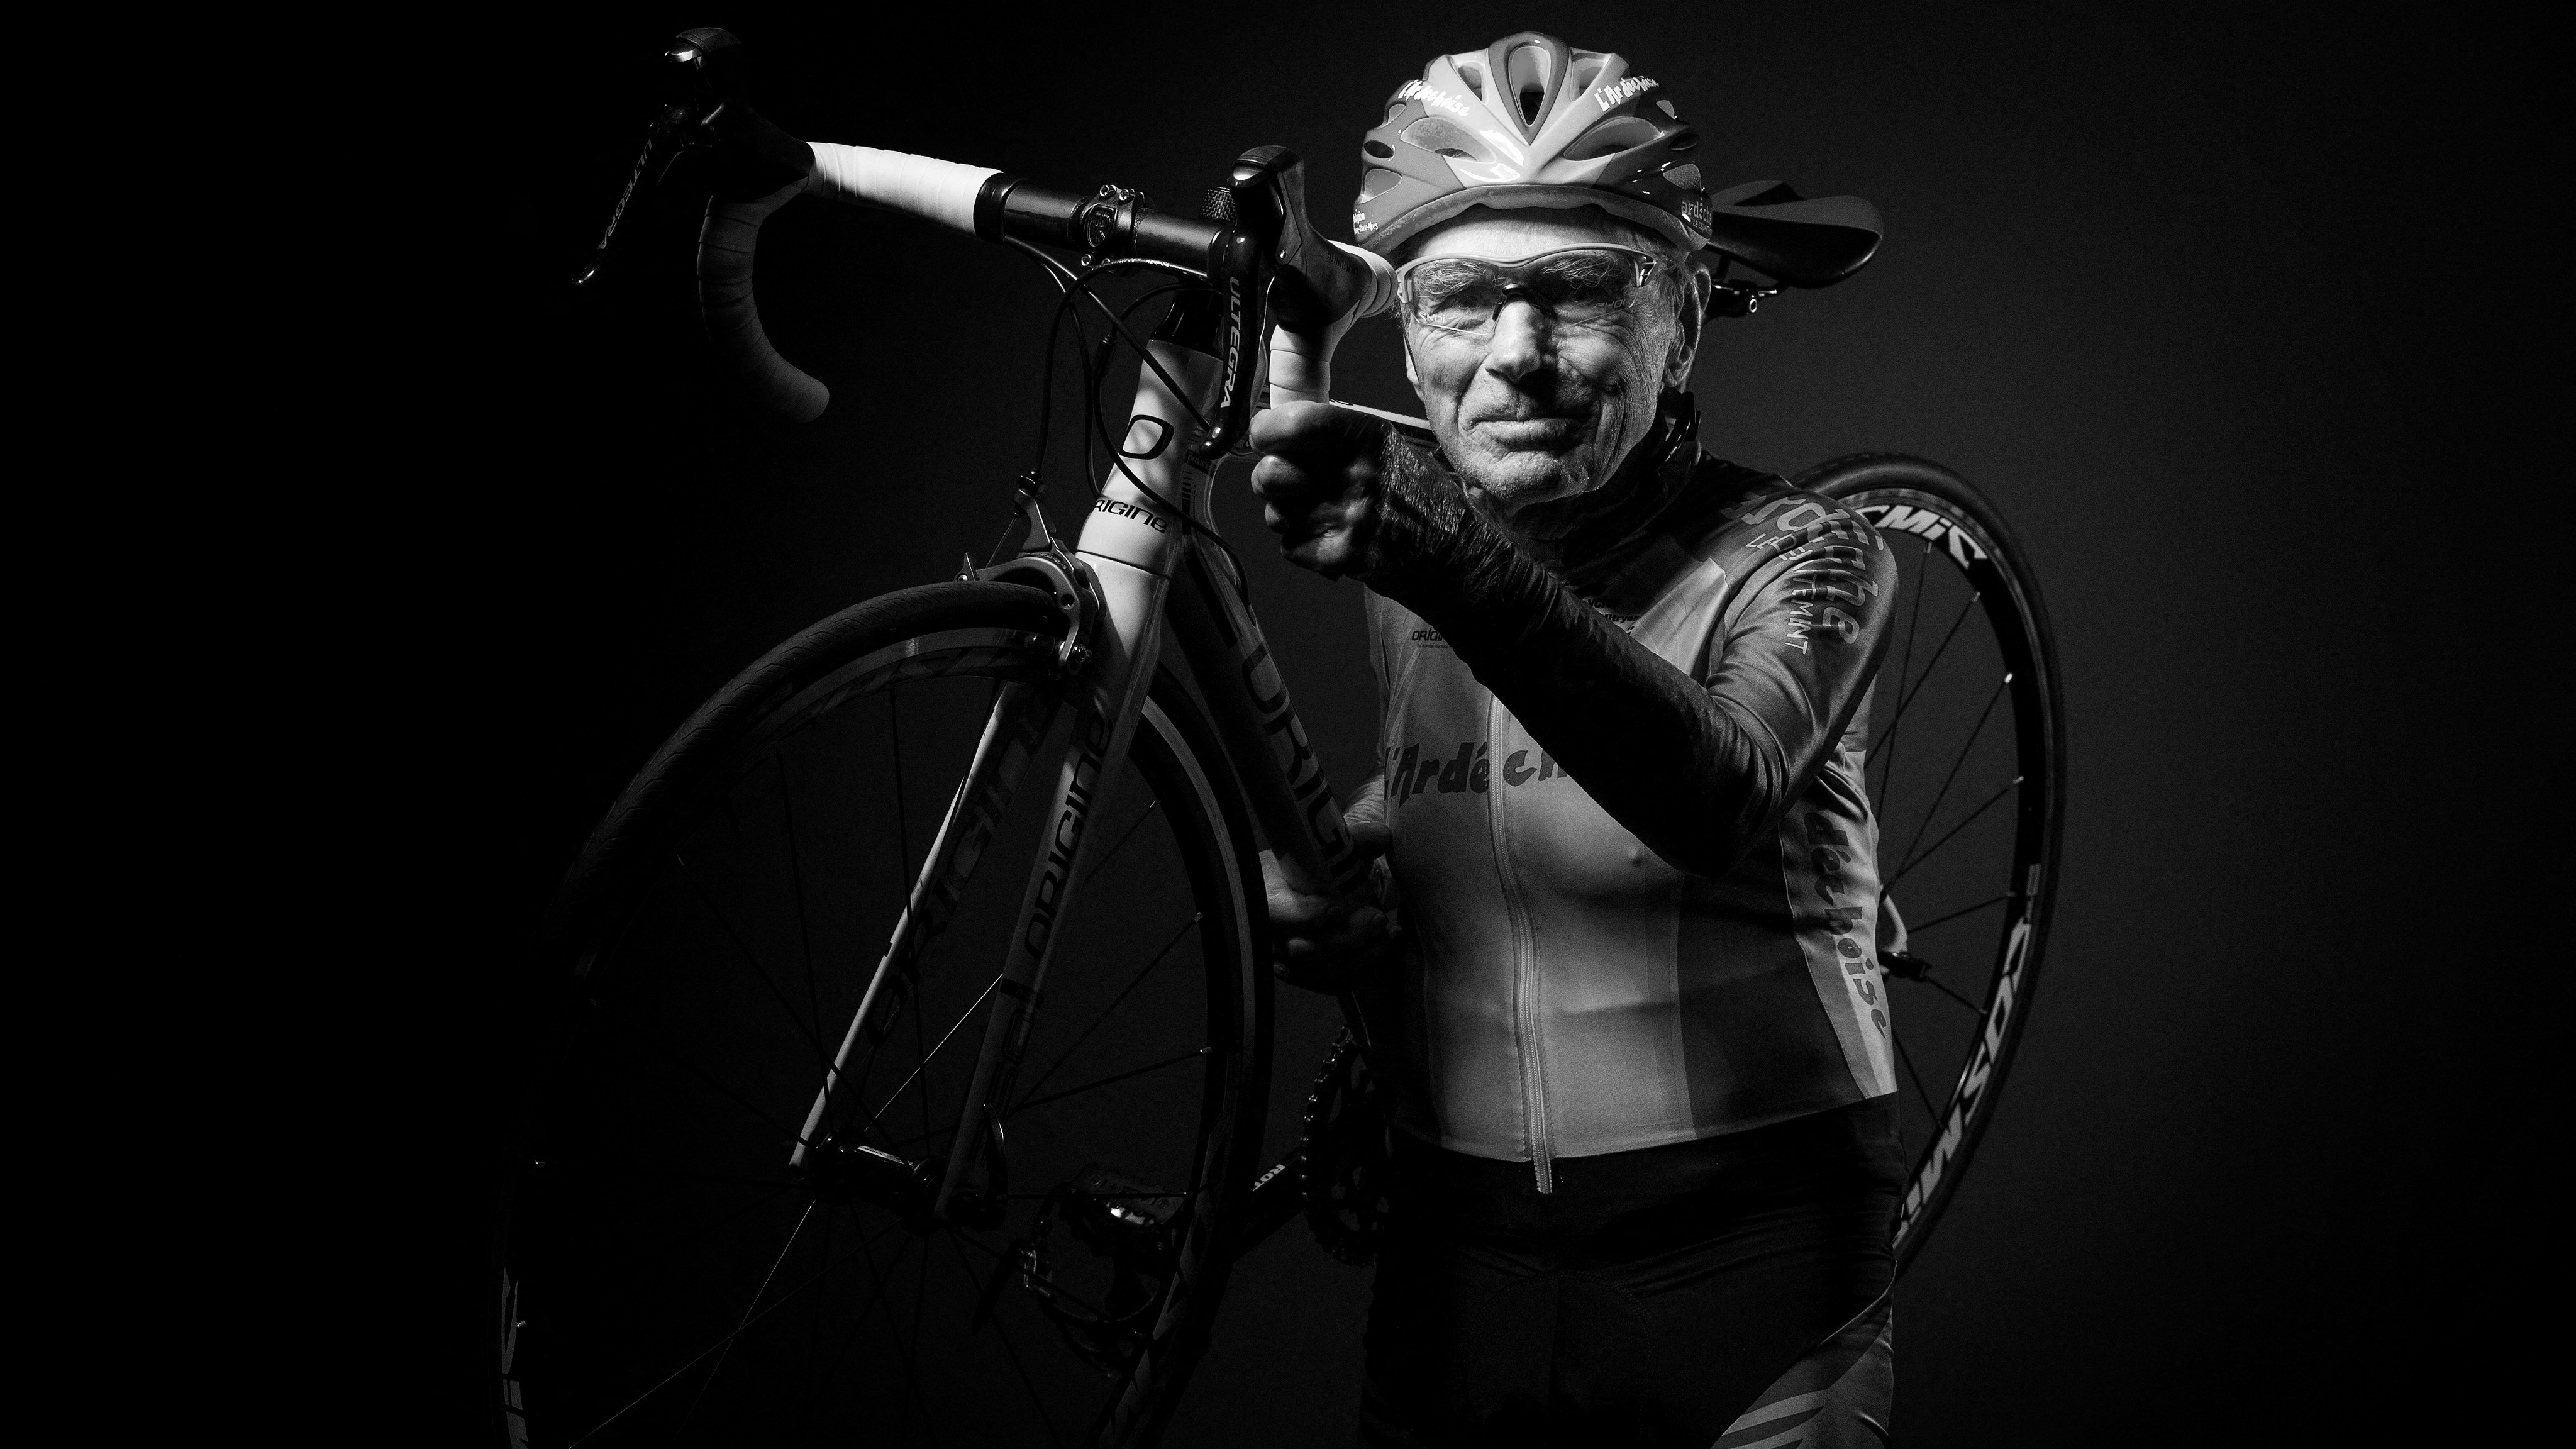 Meghalt a világ legidősebb kerékpárversenyzője, aki az elmúlt években még rekordokat döntött